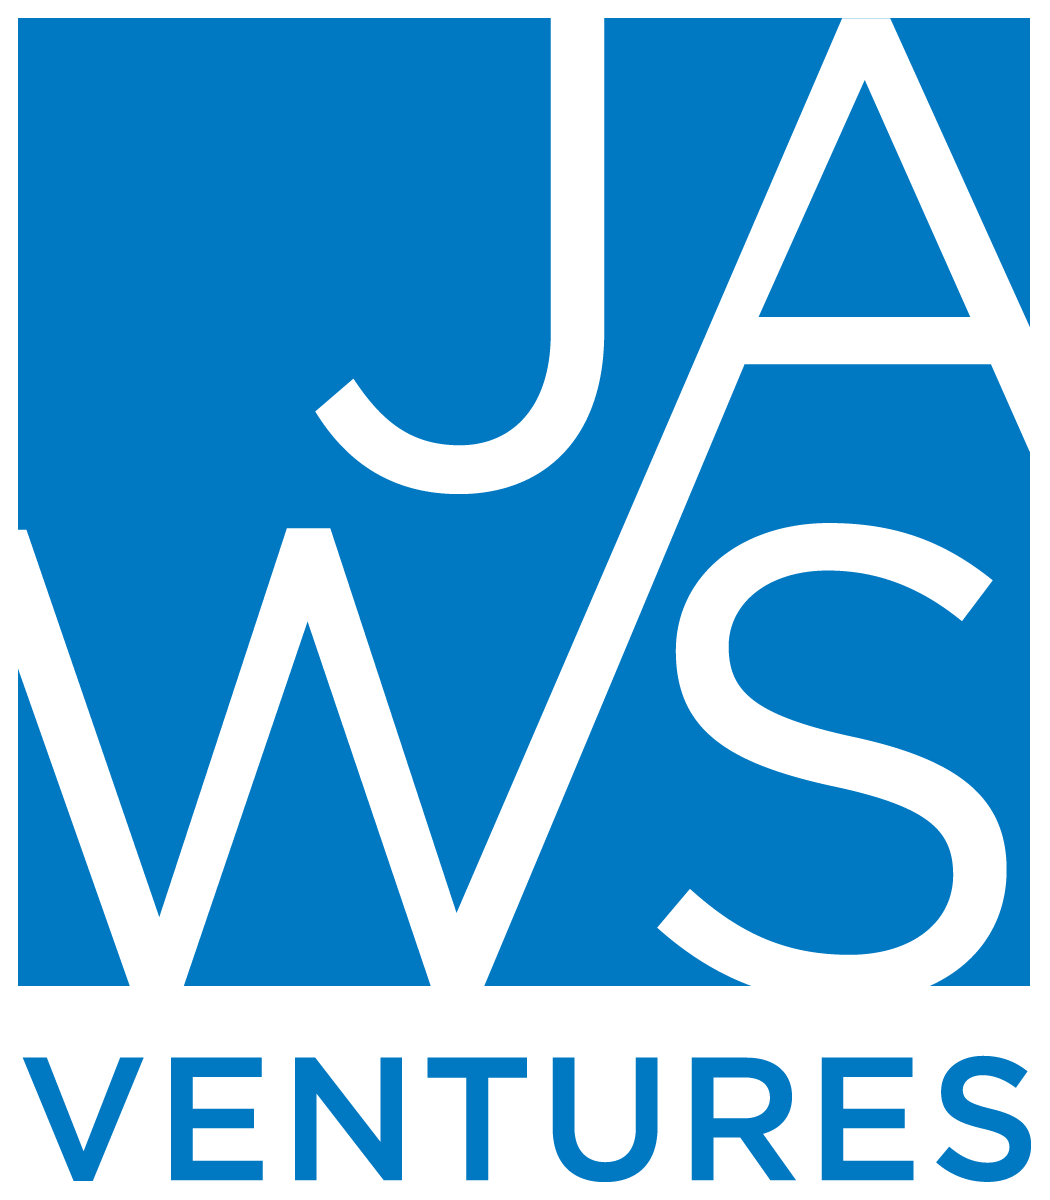 Jaws Ventures